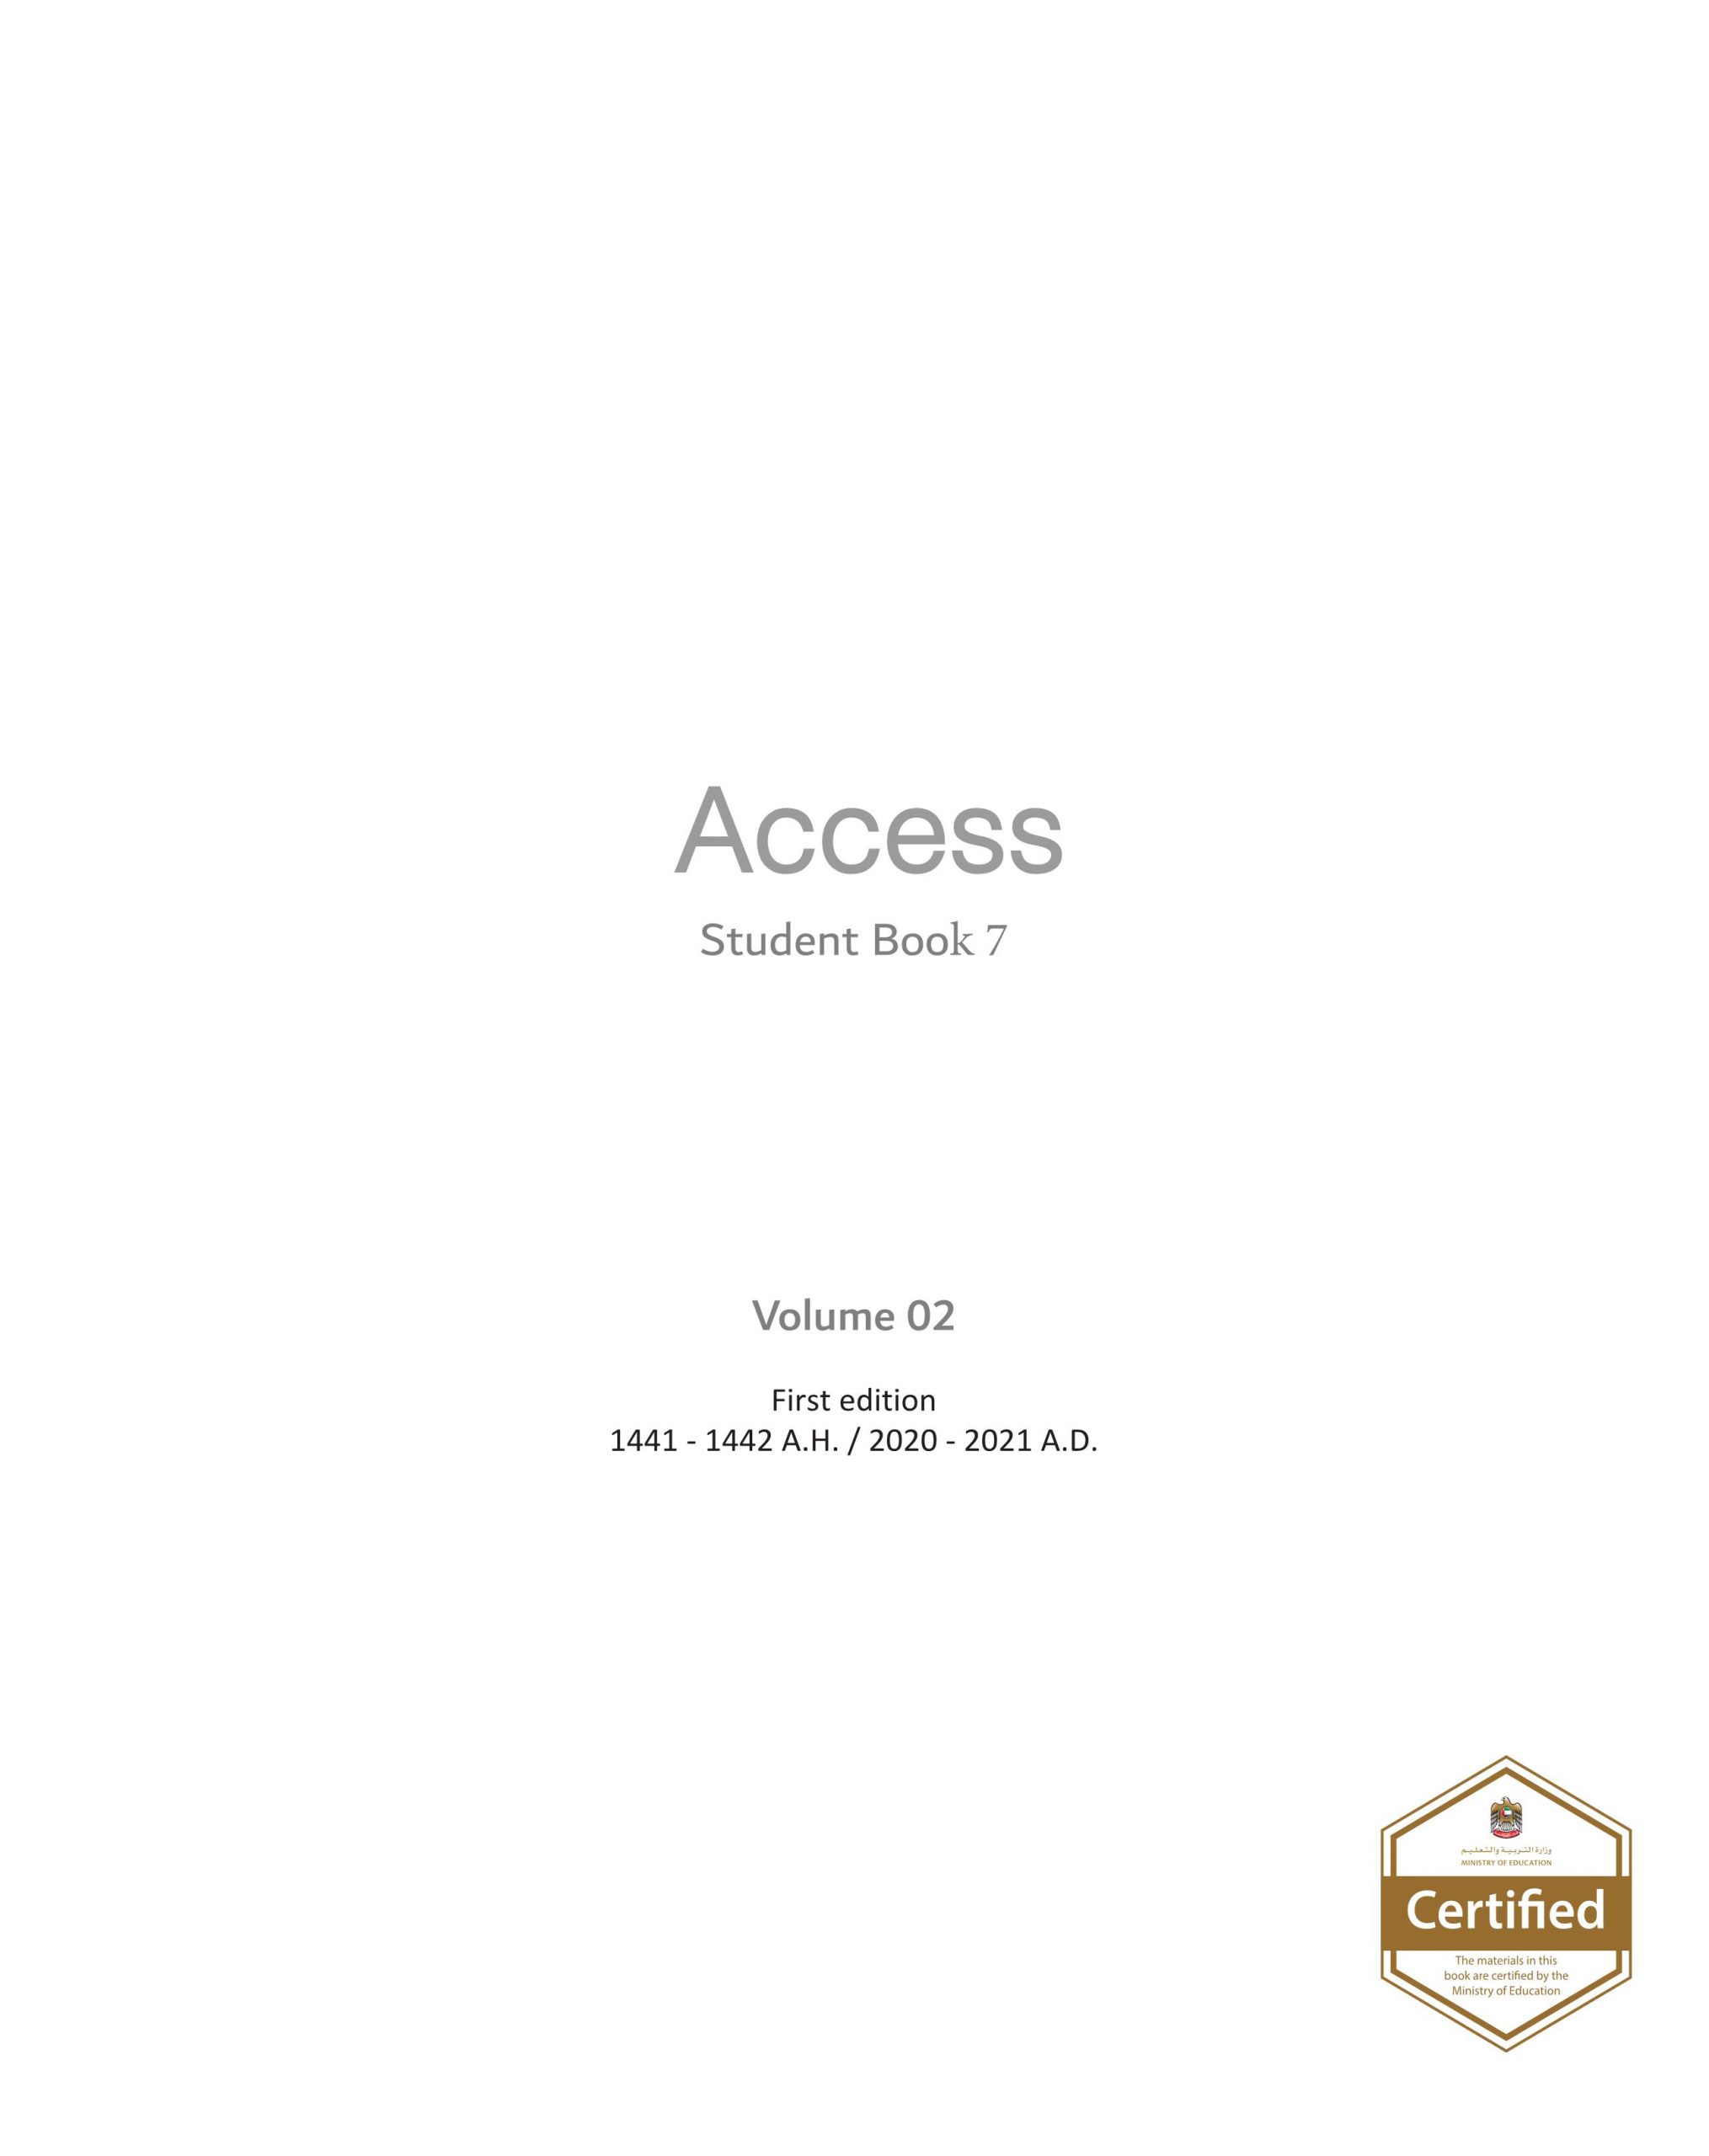 كتاب الطالب Access الفصل الدراسي الثاني 2020-2021 الصف السابع مادة اللغة الانجليزية